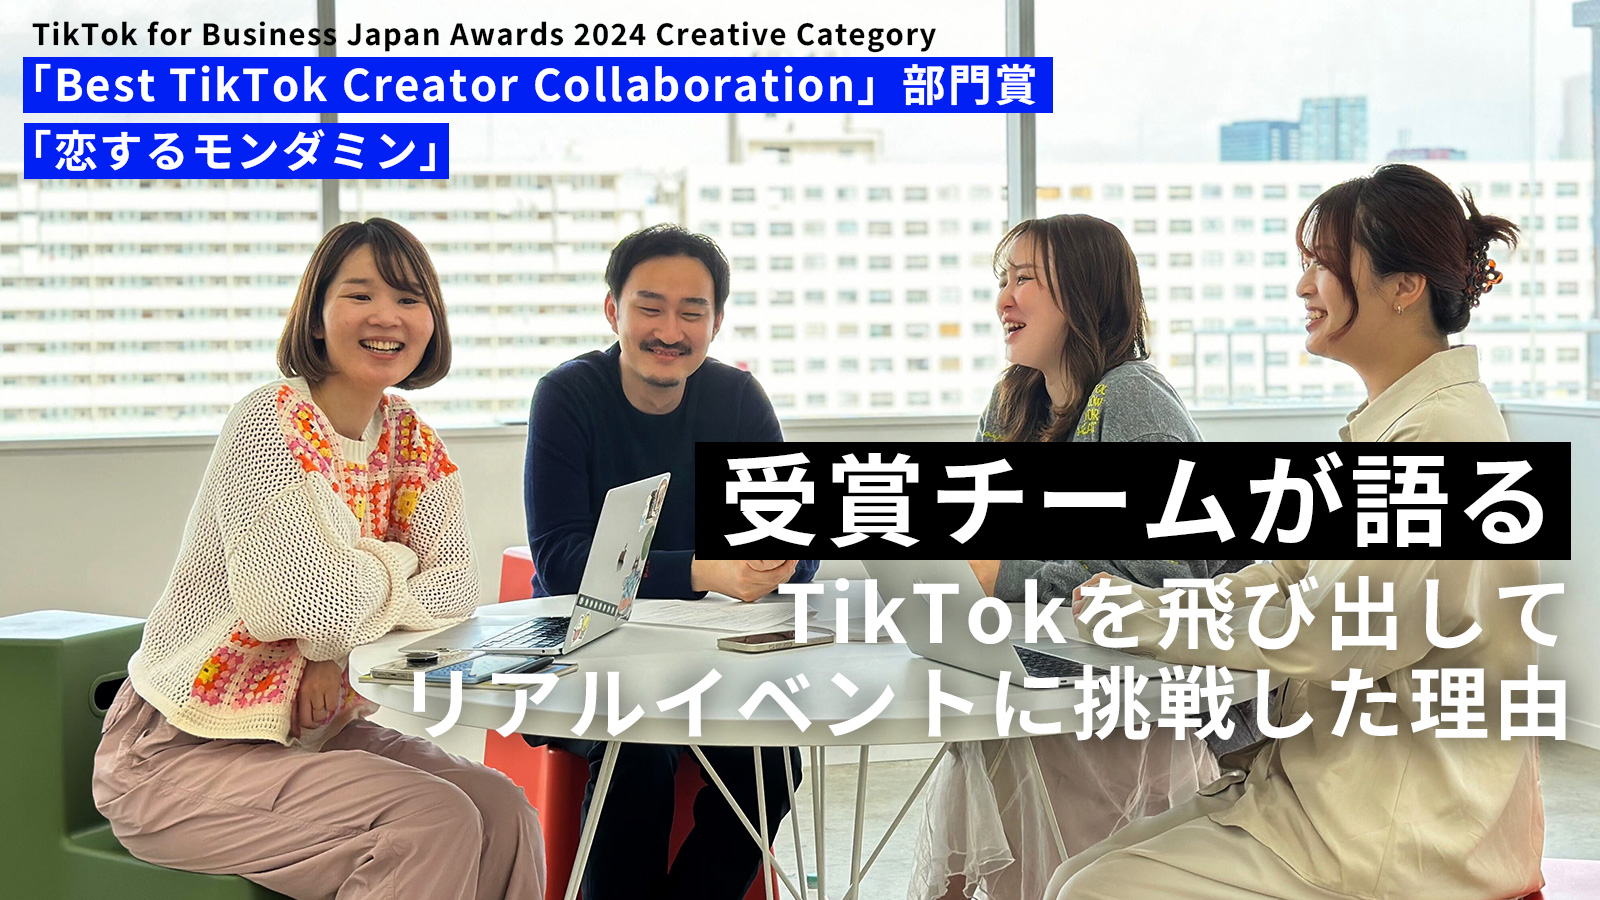 受賞チームインタビュー｜アース製薬様『恋するモンダミン』「TikTok for Business Japan Awards 2024 Creative Category」Best TikTok Creator Collaboration 部門・部門賞受賞の画像